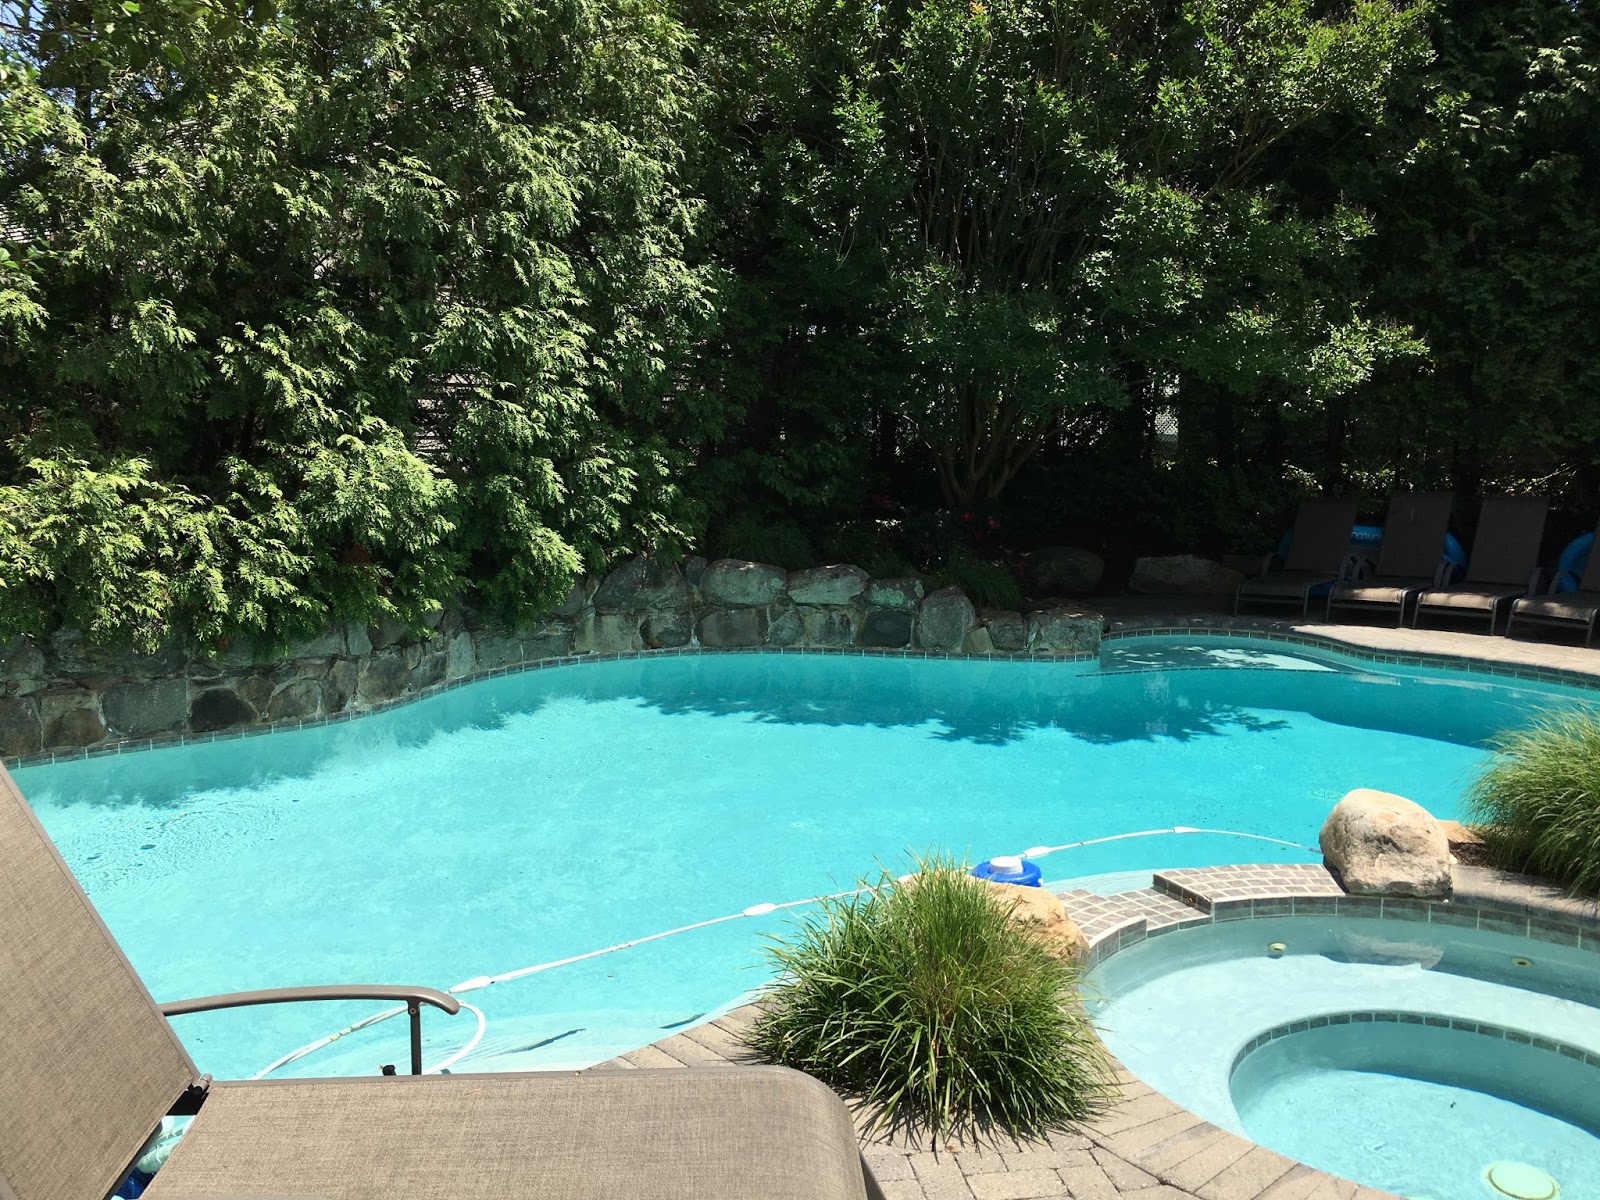 Freeform swimming pool in backyard